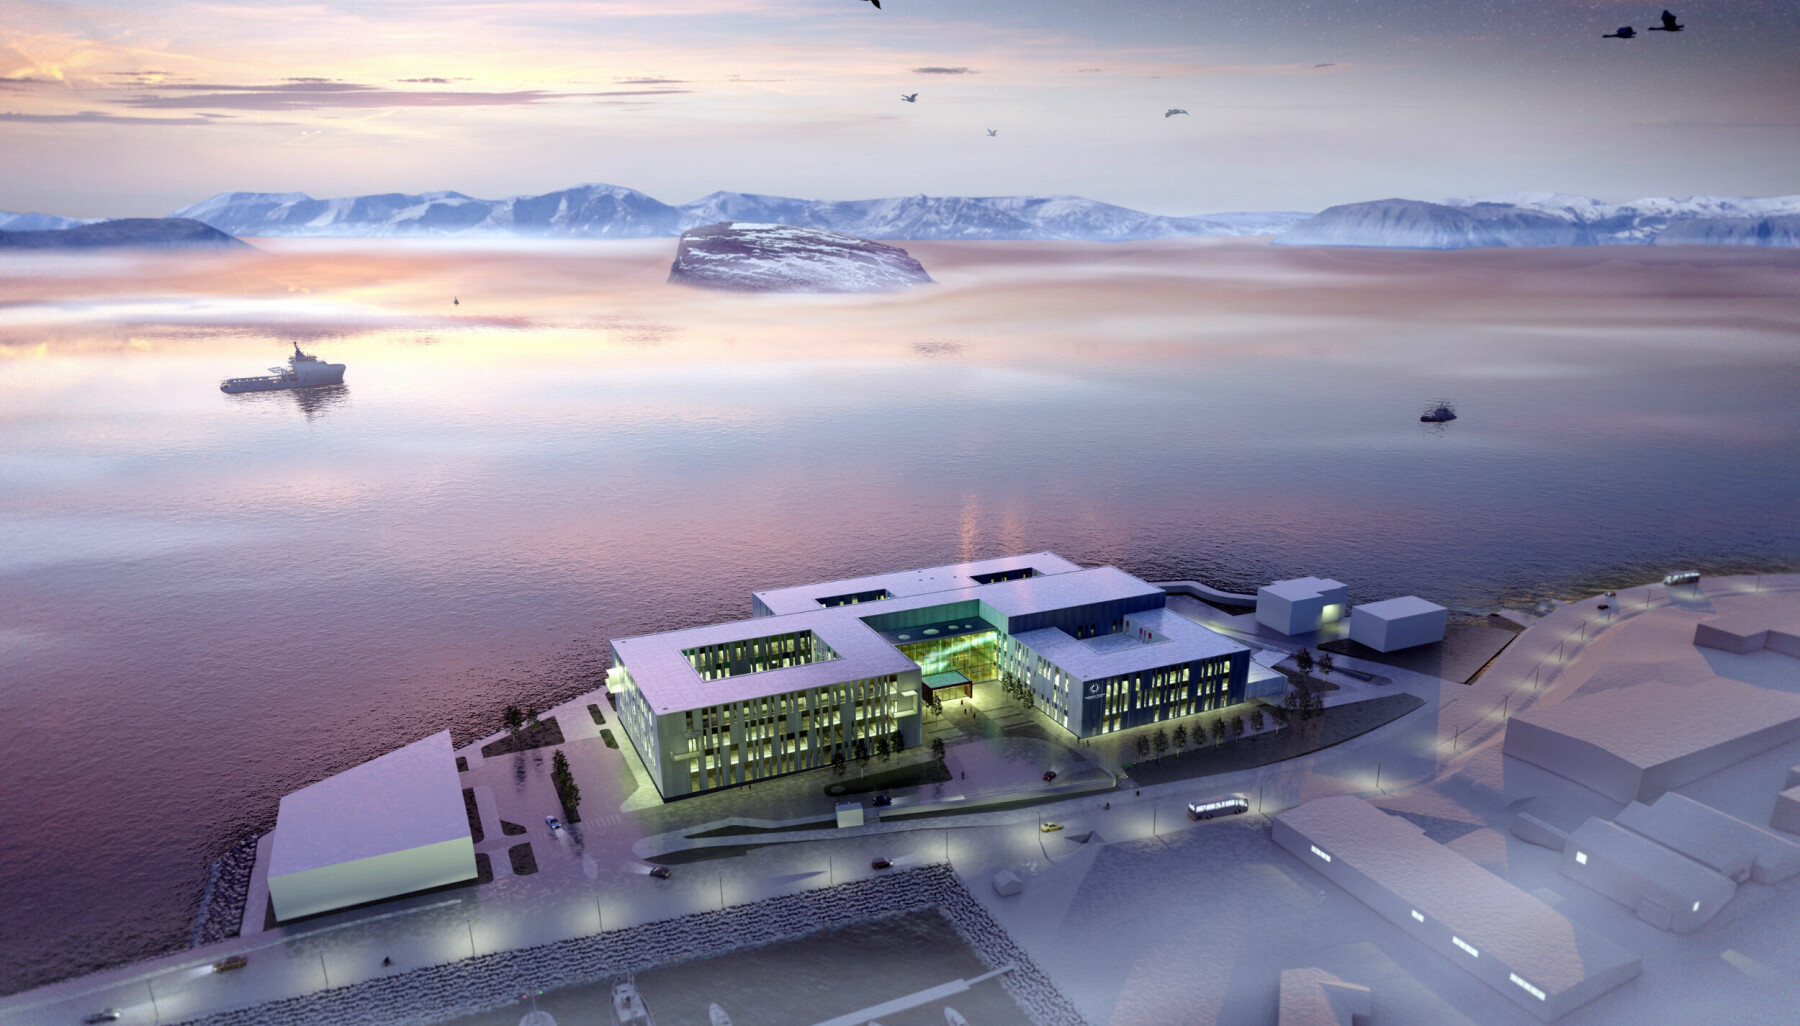 Akkurat nå bygger vi nye Hammerfest sykehus. Bli med på reisen dit!